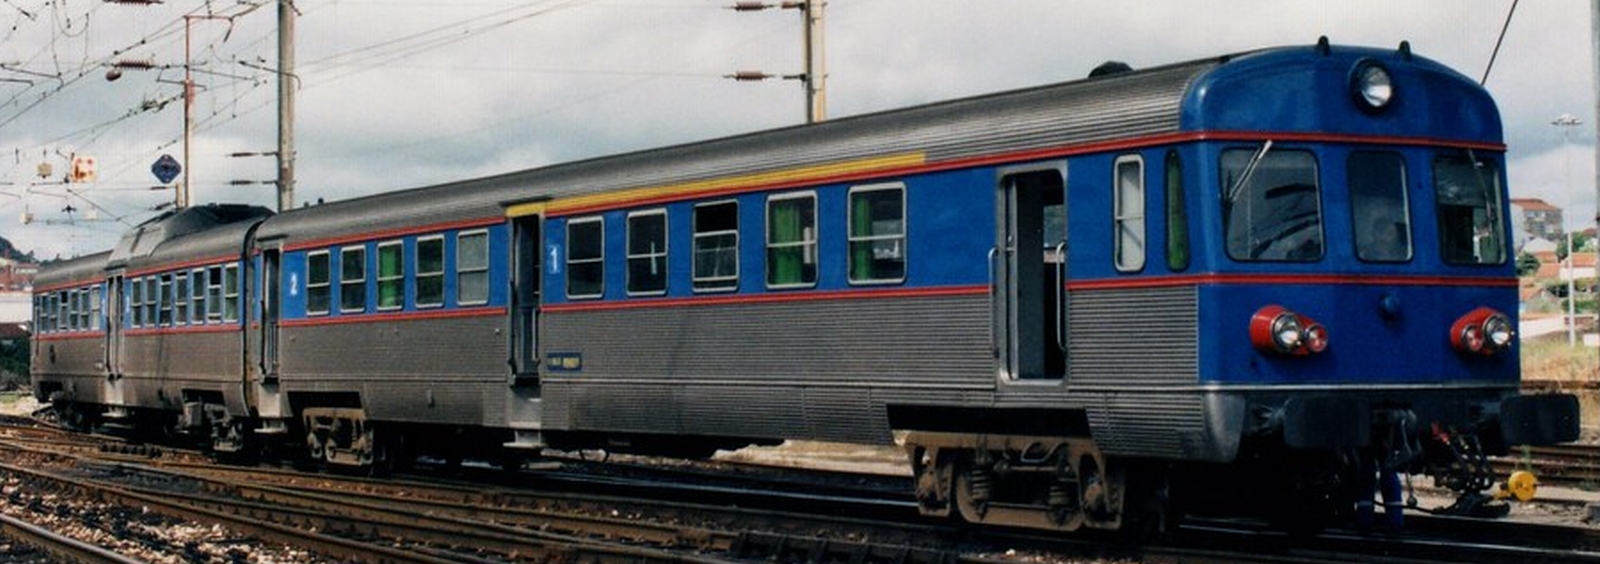 1997 in Porto-Campanhã station